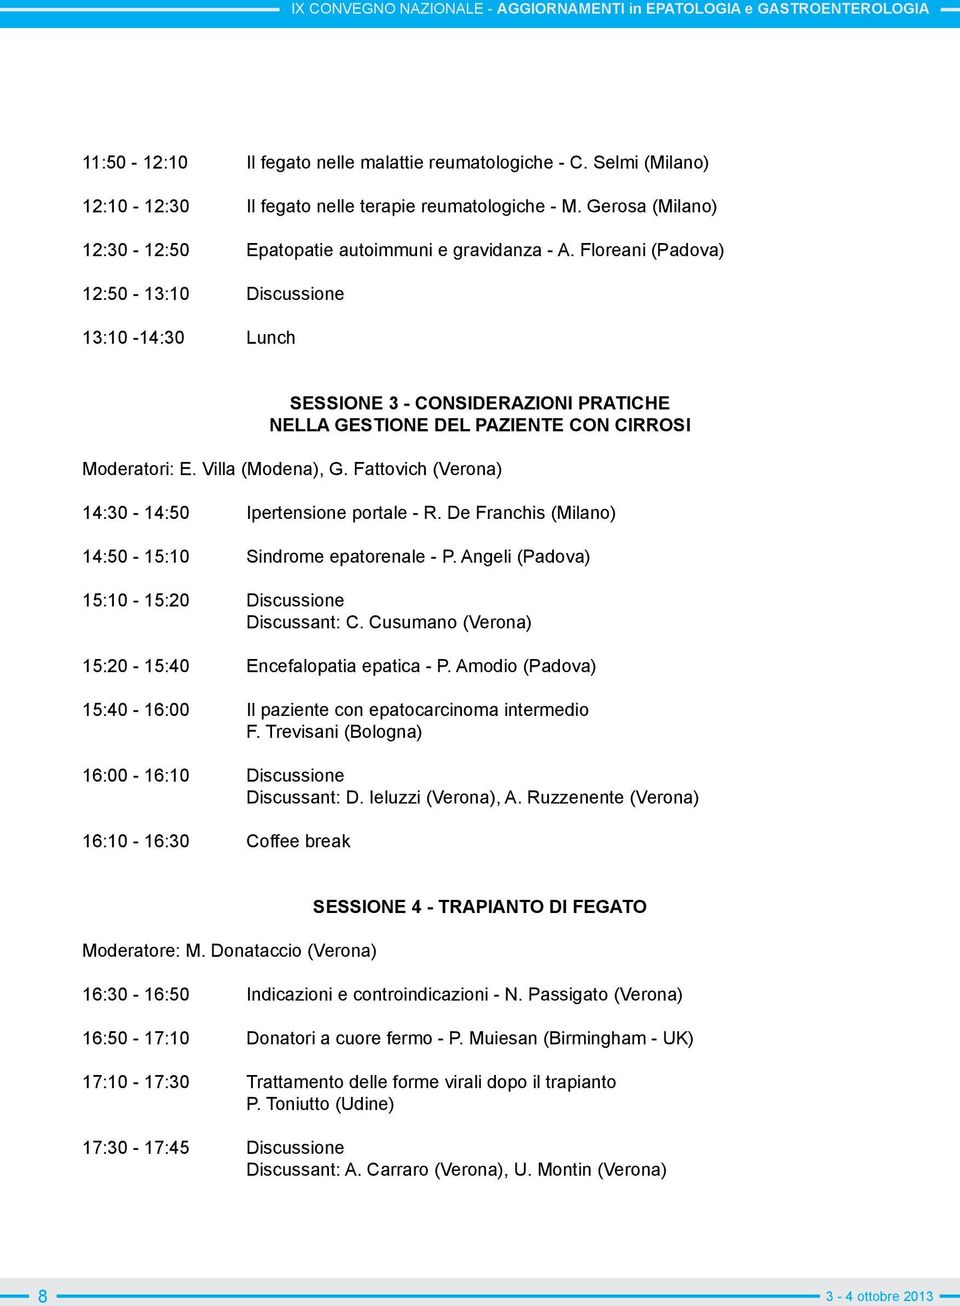 Fattovich (Verona) 14:30-14:50 Ipertensione portale - R. De Franchis (Milano) 14:50-15:10 Sindrome epatorenale - P. Angeli (Padova) 15:10-15:20 Discussione Discussant: C.